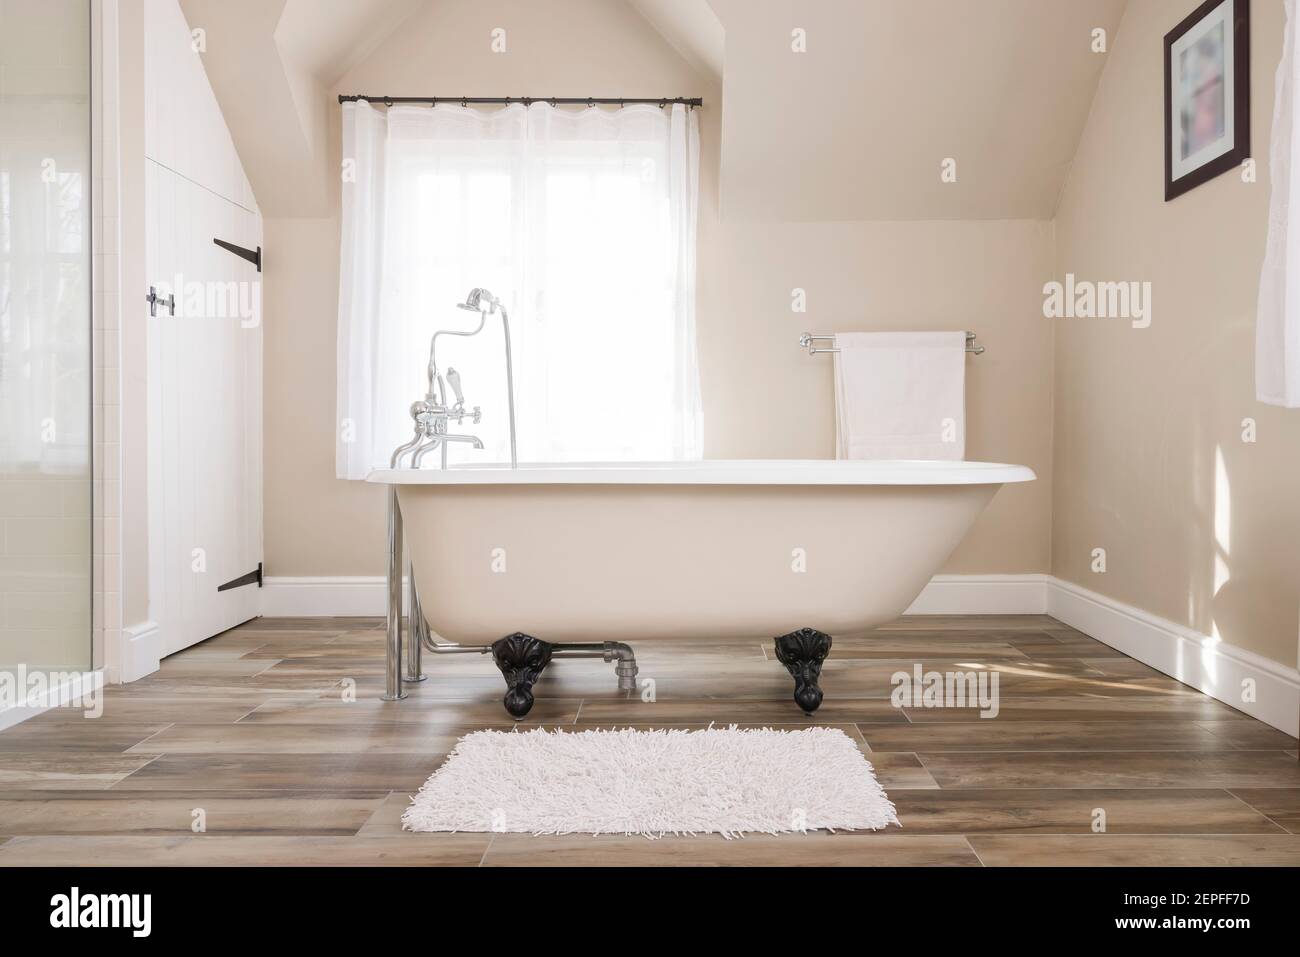 Interni del bagno, lussuoso bagno dal design moderno con vasca per disabili e una finestra sullo sfondo, Regno Unito Foto Stock